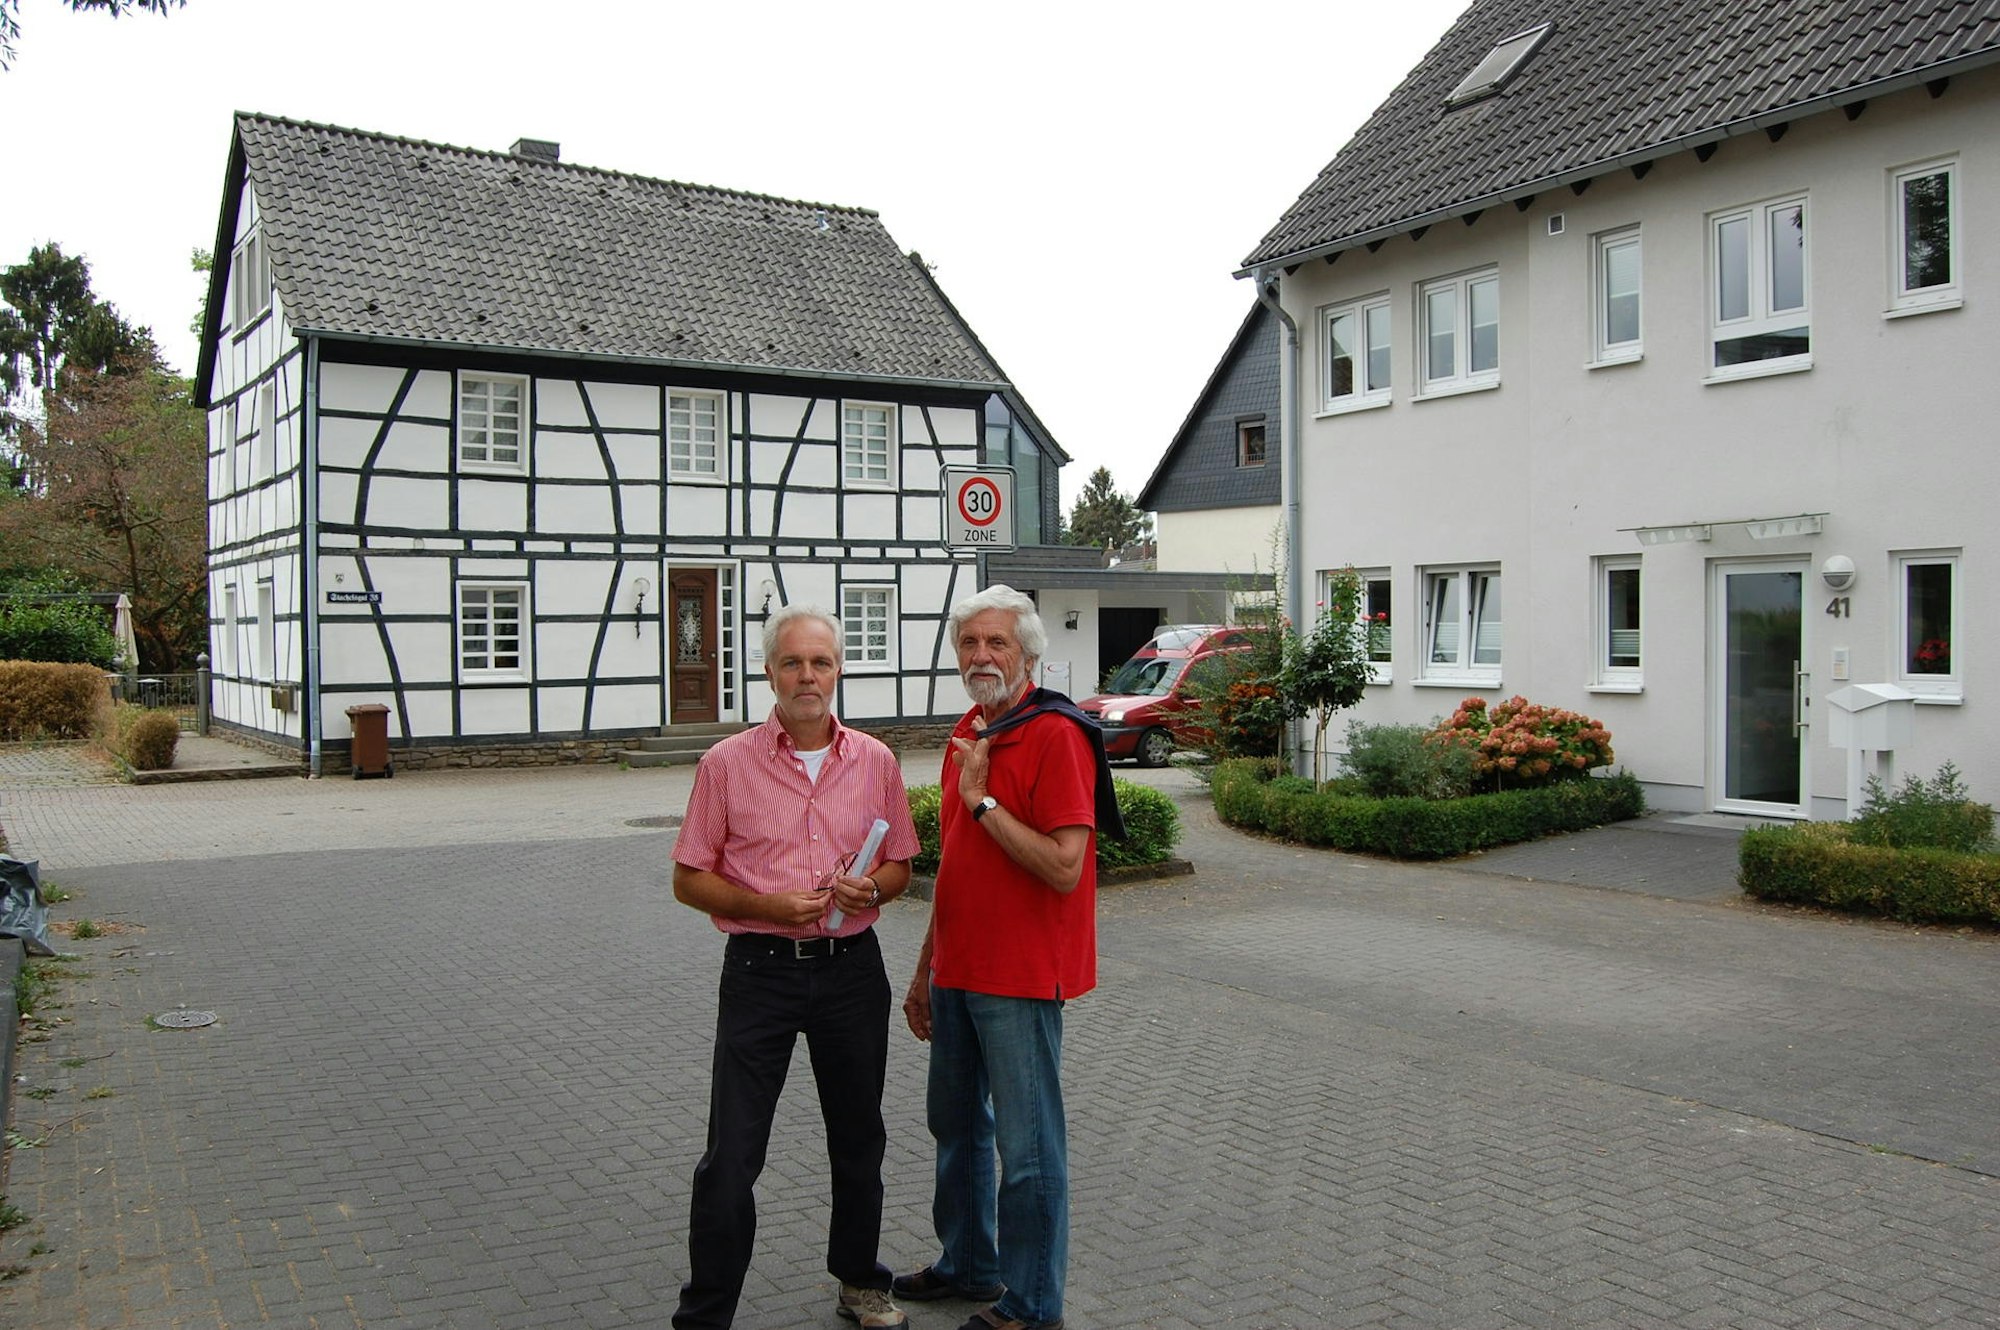 Viele Neubauten passen nicht ins Ortsbild finden Manfred Büscher und Hans Peter Müller (v.l.).